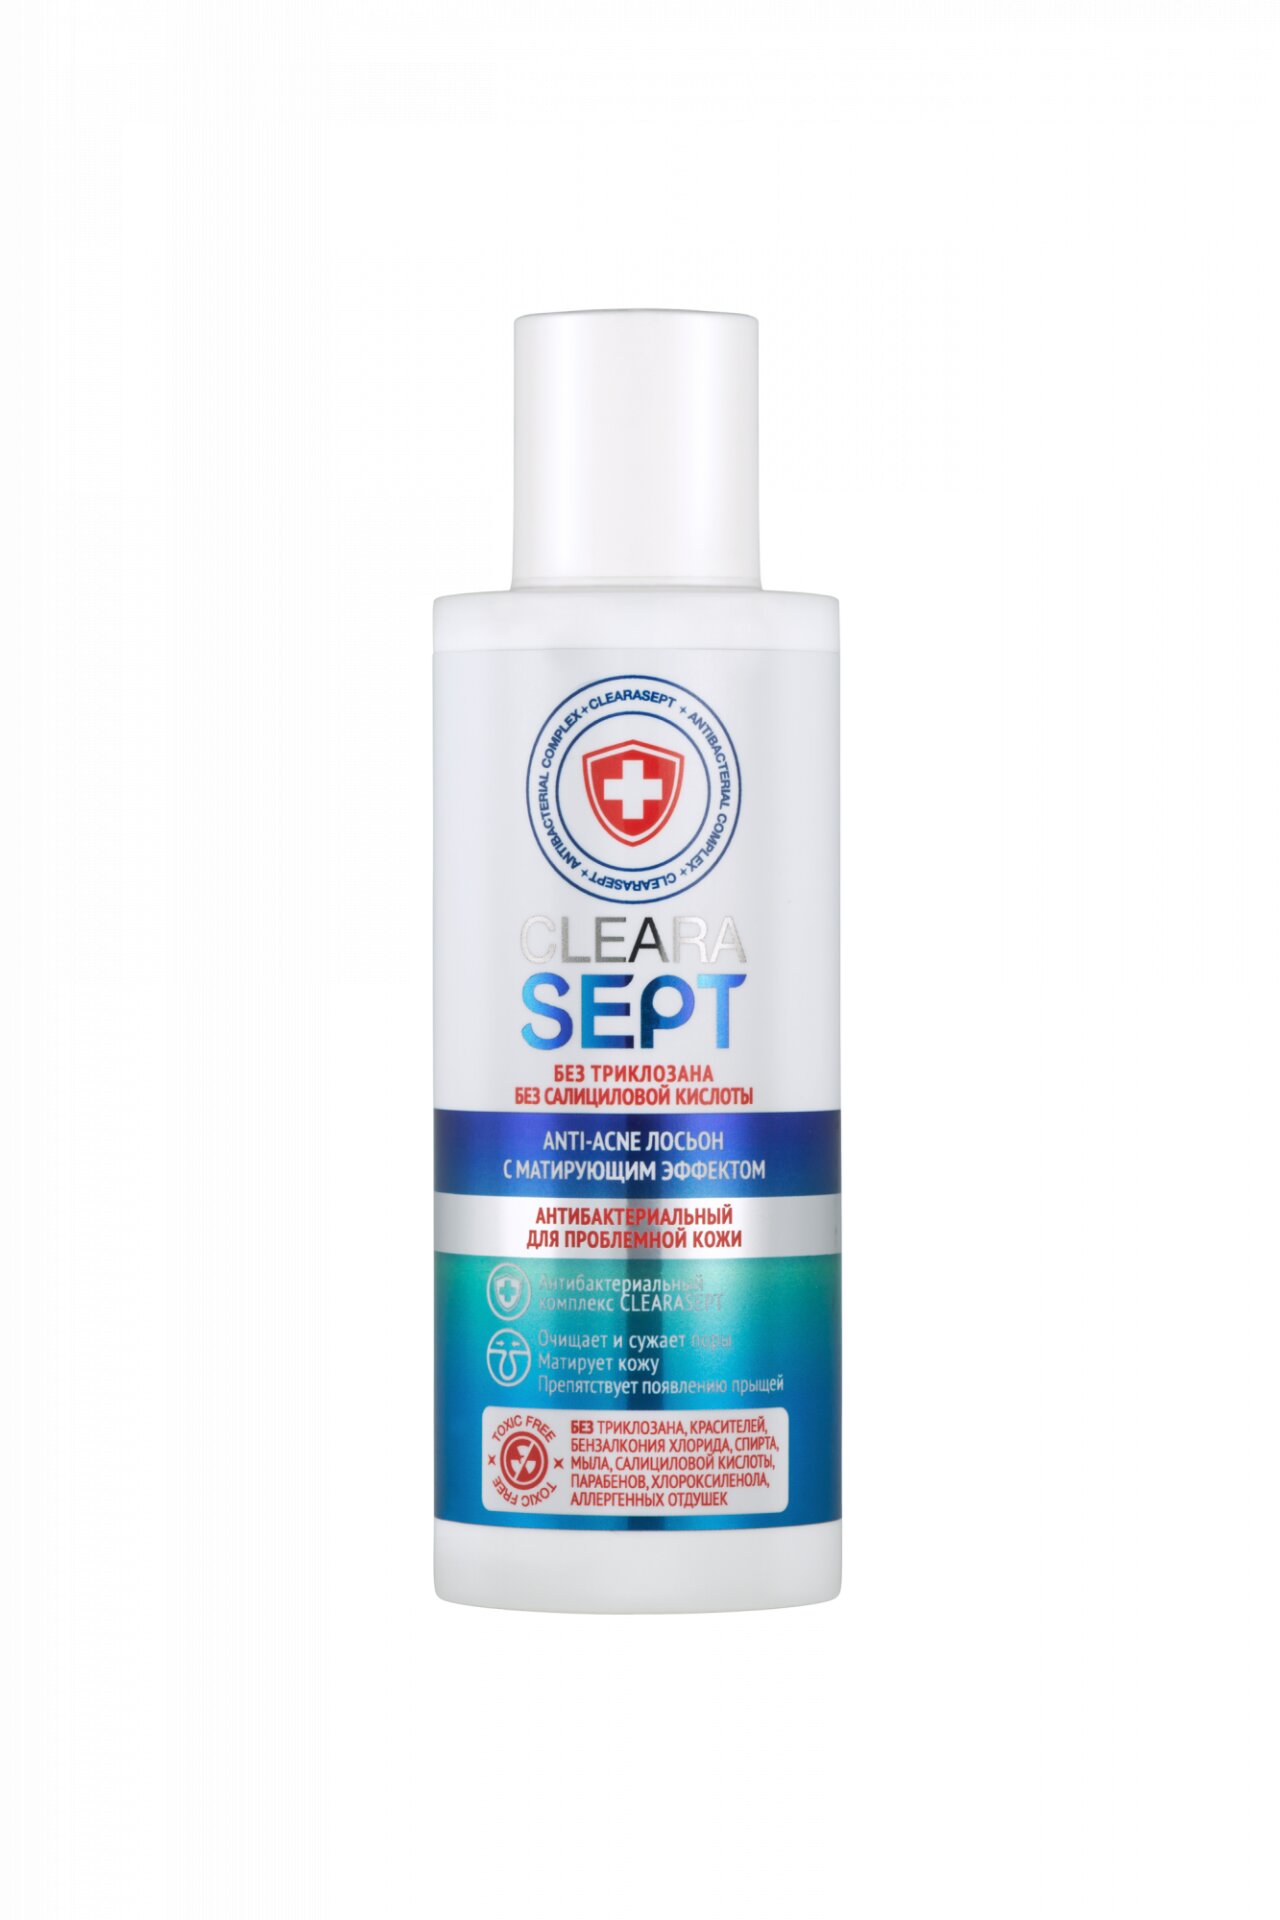 CLEARASEPT ClearaSept Anti-acne лосьон антибактериальный для проблемной кожи с матирующим эффектом, 150 мл (CLEARASEPT, Для лица)